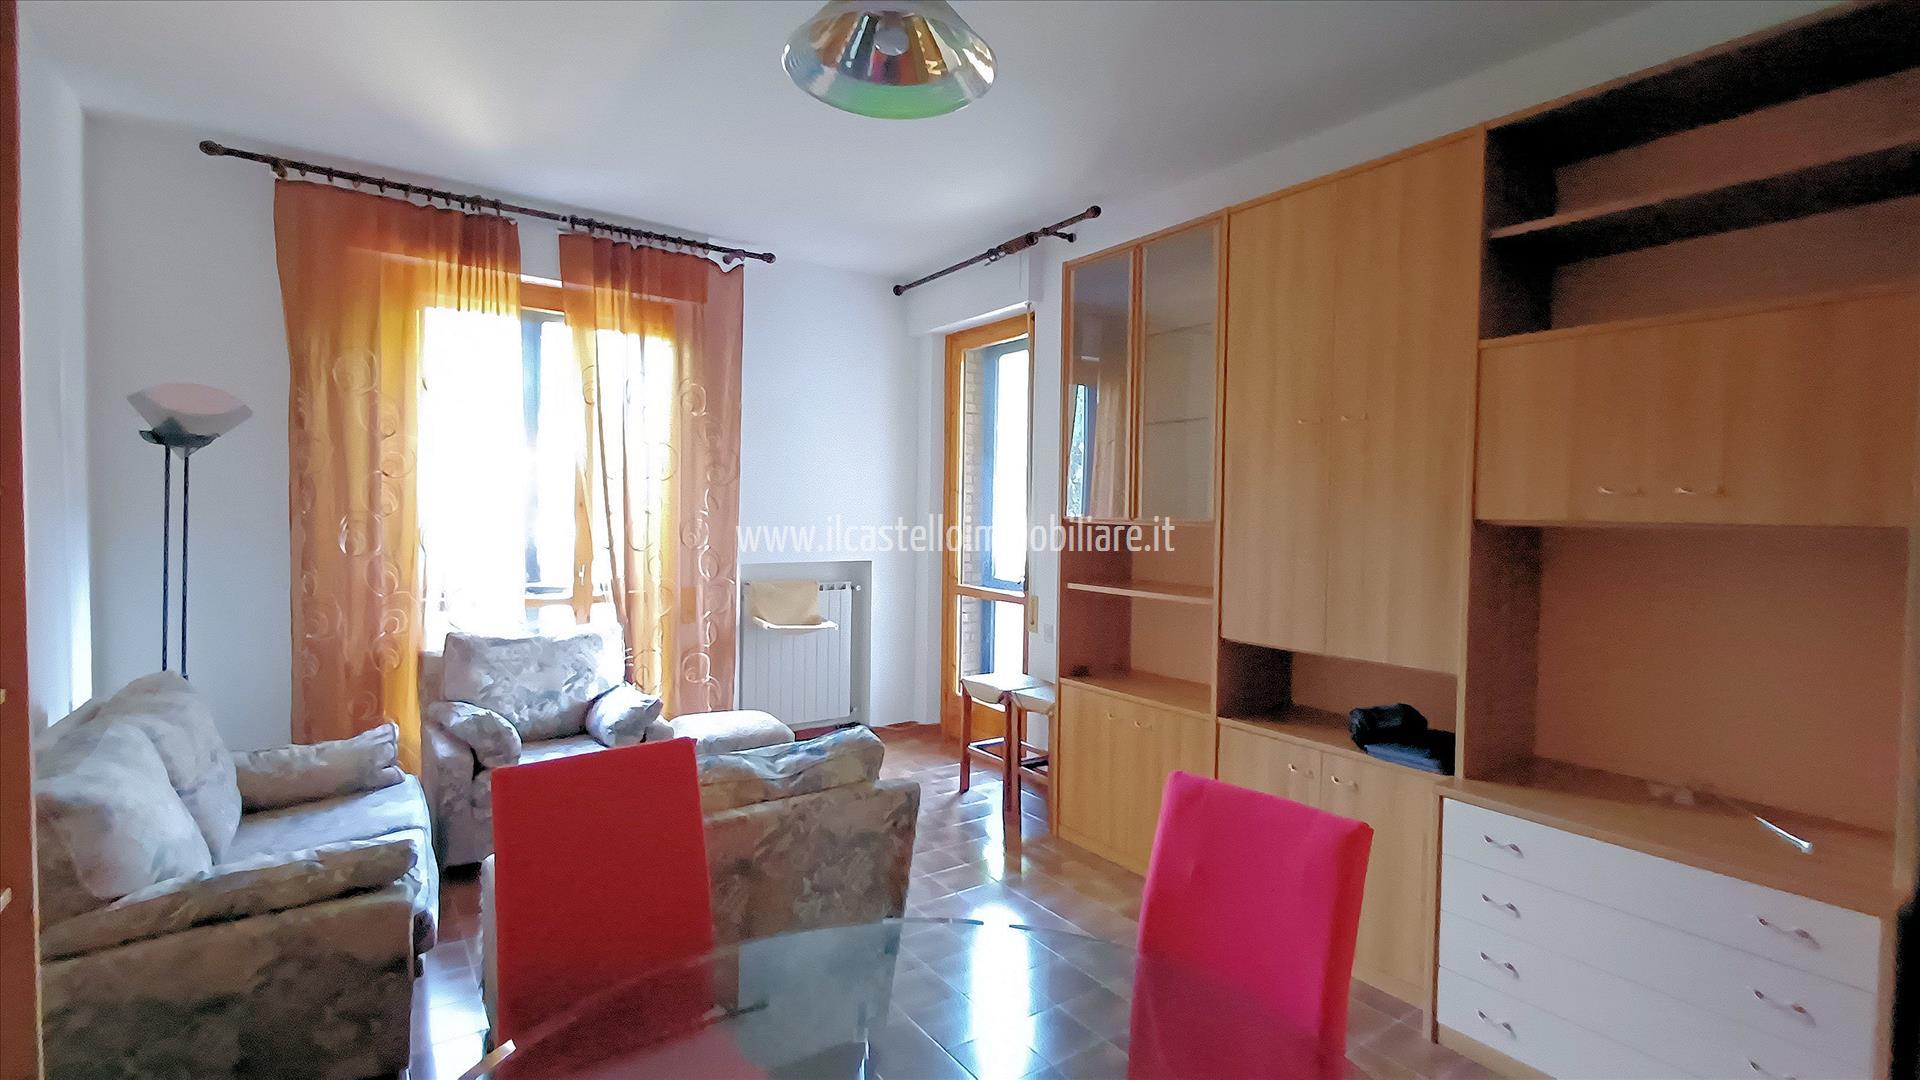 Appartamento in vendita a Siena, 3 locali, prezzo € 330.000 | PortaleAgenzieImmobiliari.it